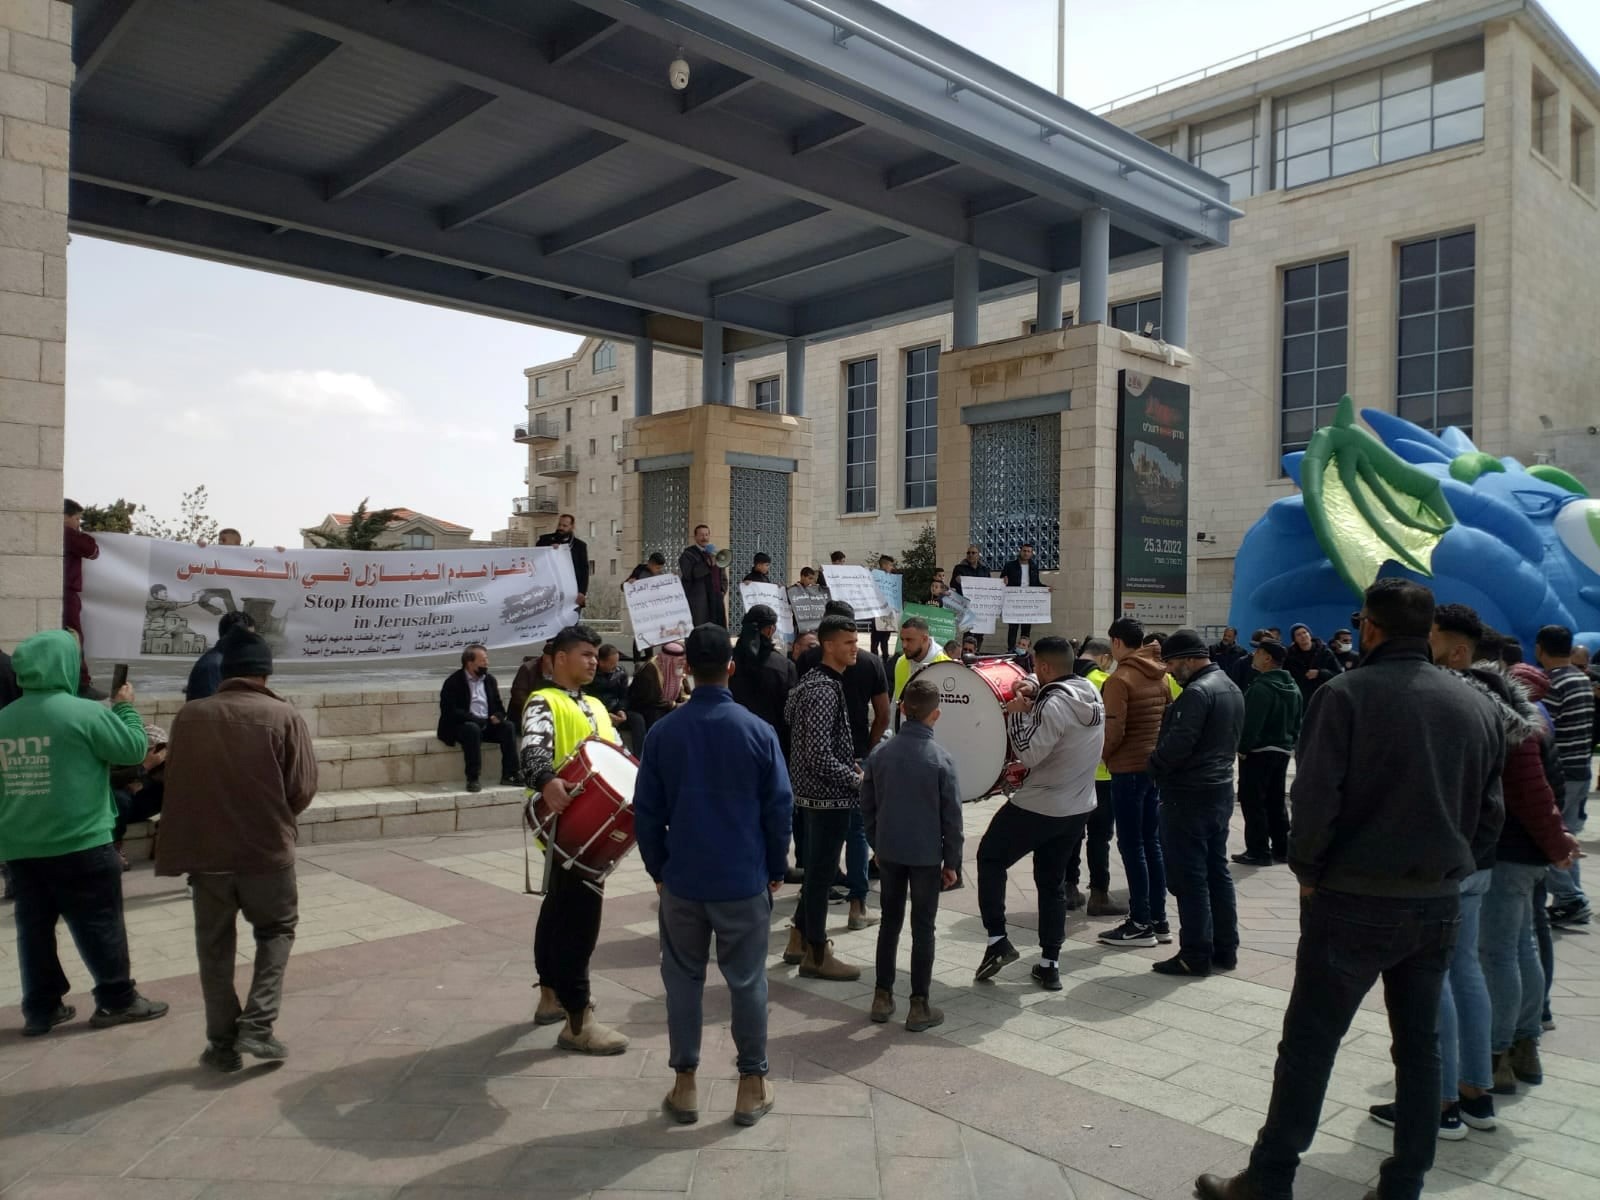 תושבי ג'בל מוכבר הפלסטינים הפגינו בכיכר ספרא נגד הריסות בתיהם בחסות עיריית י-ם